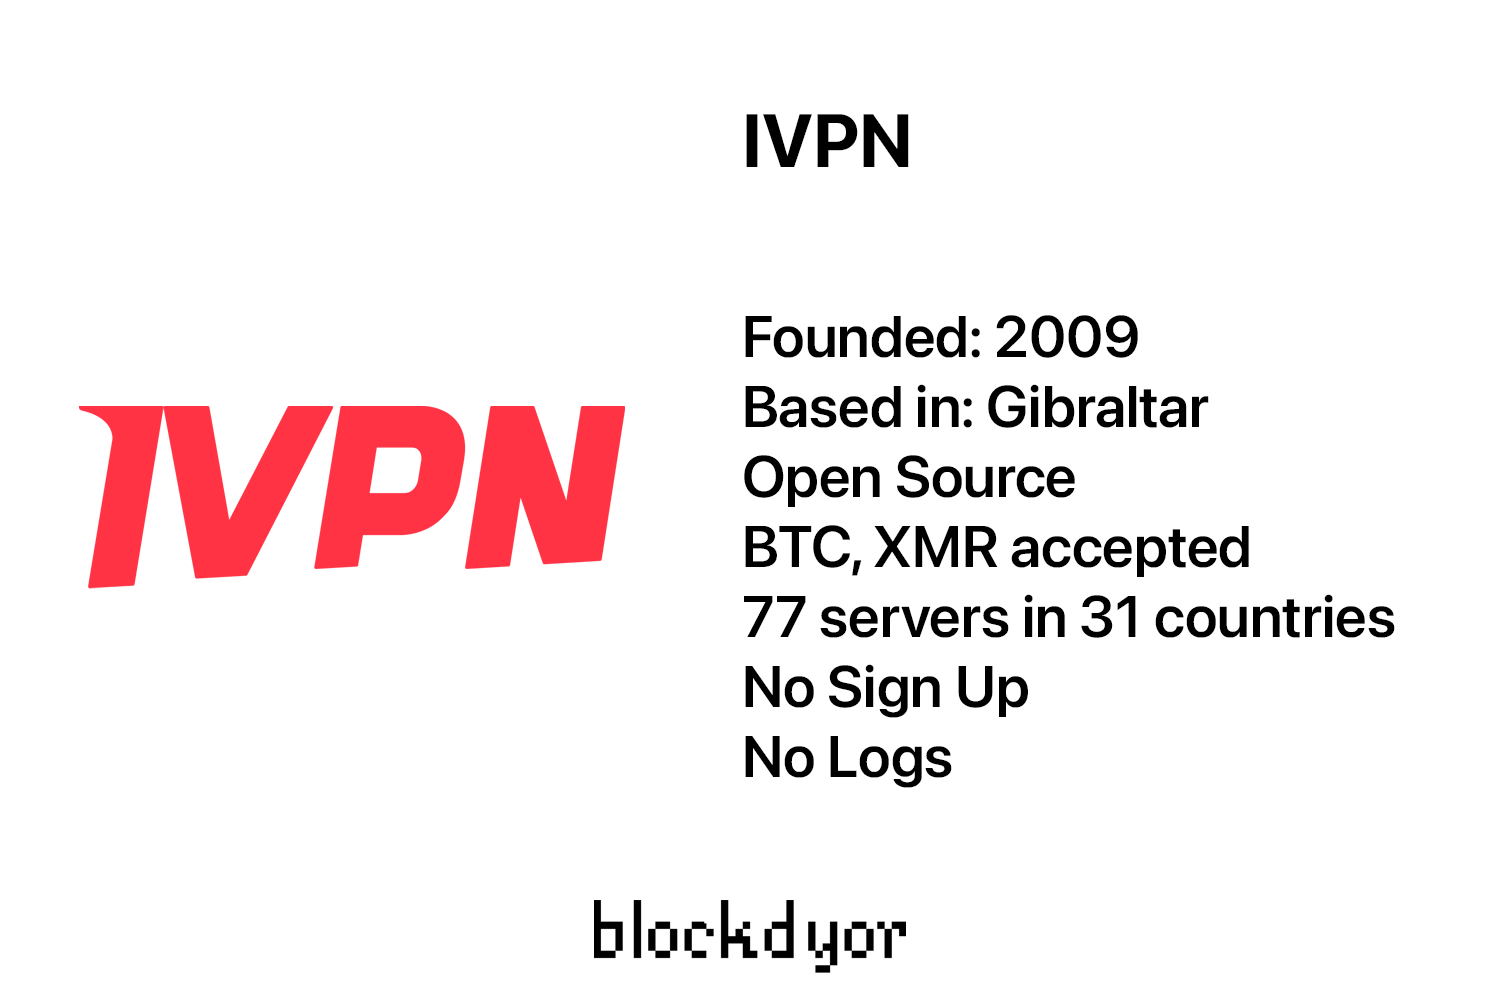 IVPN Overview